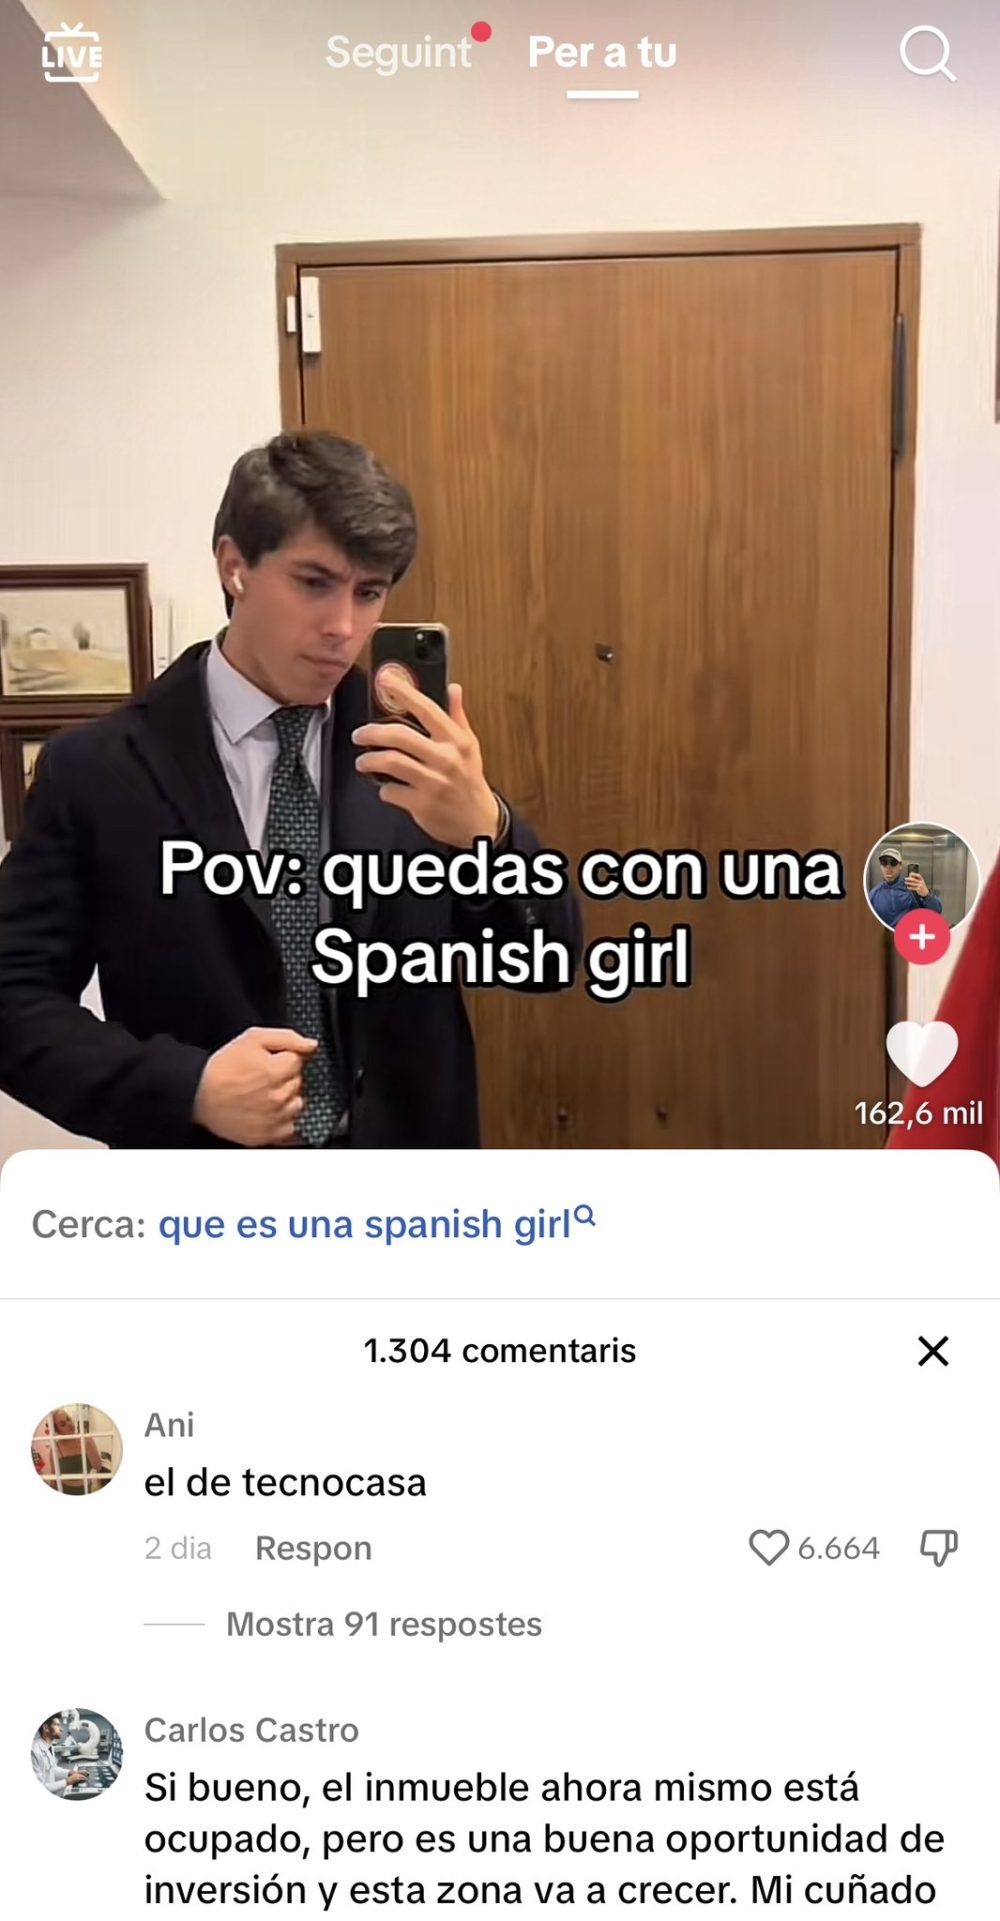 "POV: Quedas con una spanish girl"